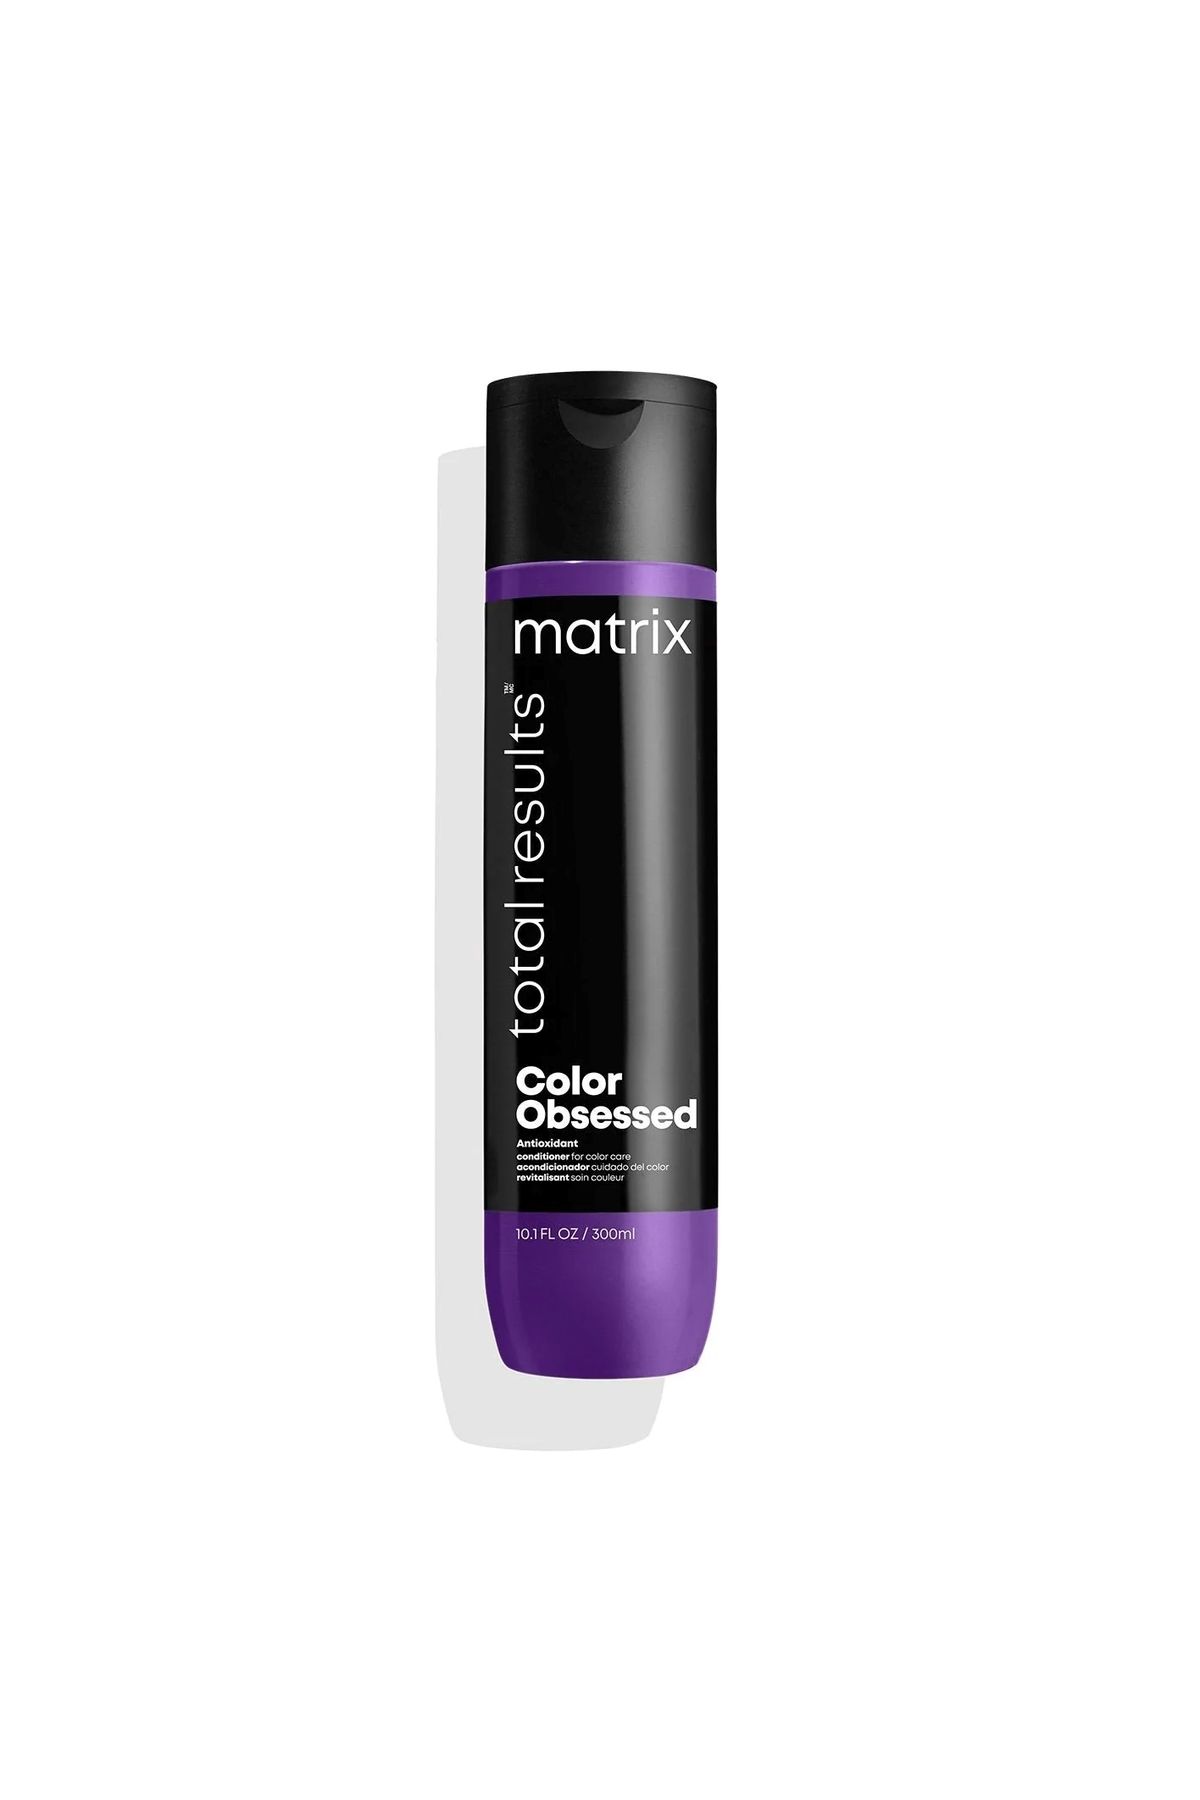 Matrix Color Obsessed Conditioner-Boyalı Saçlar İçin Parlaklık Veren Saç Kremi 300ml SED656531313163